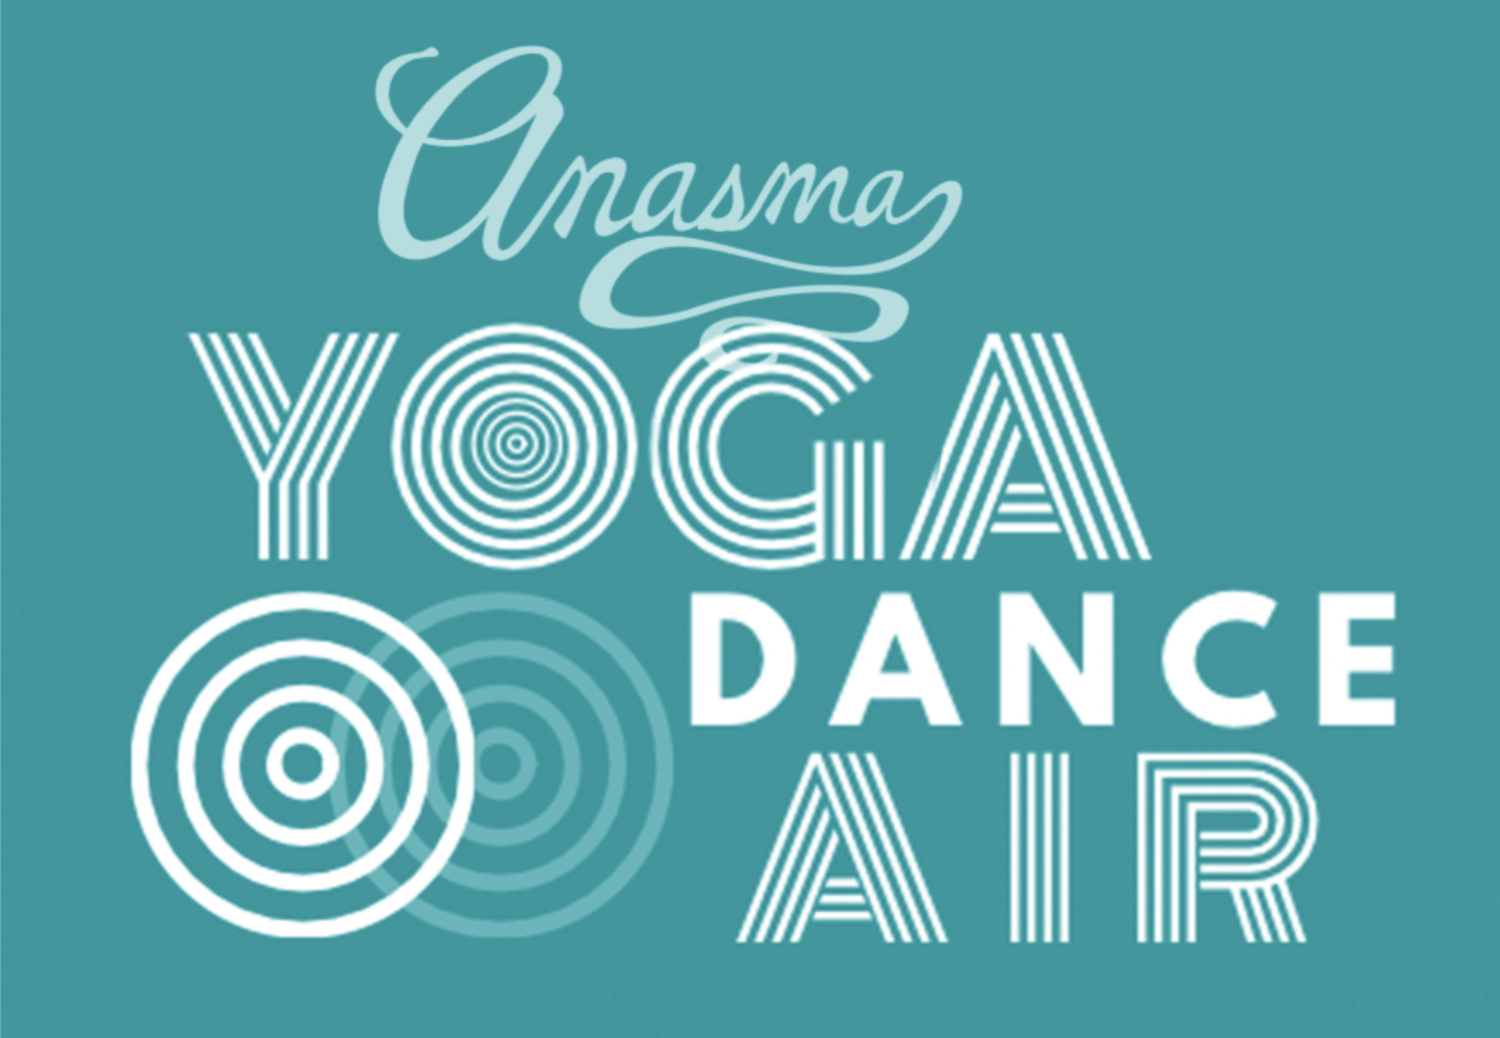 Anasma Yoga Dance Air